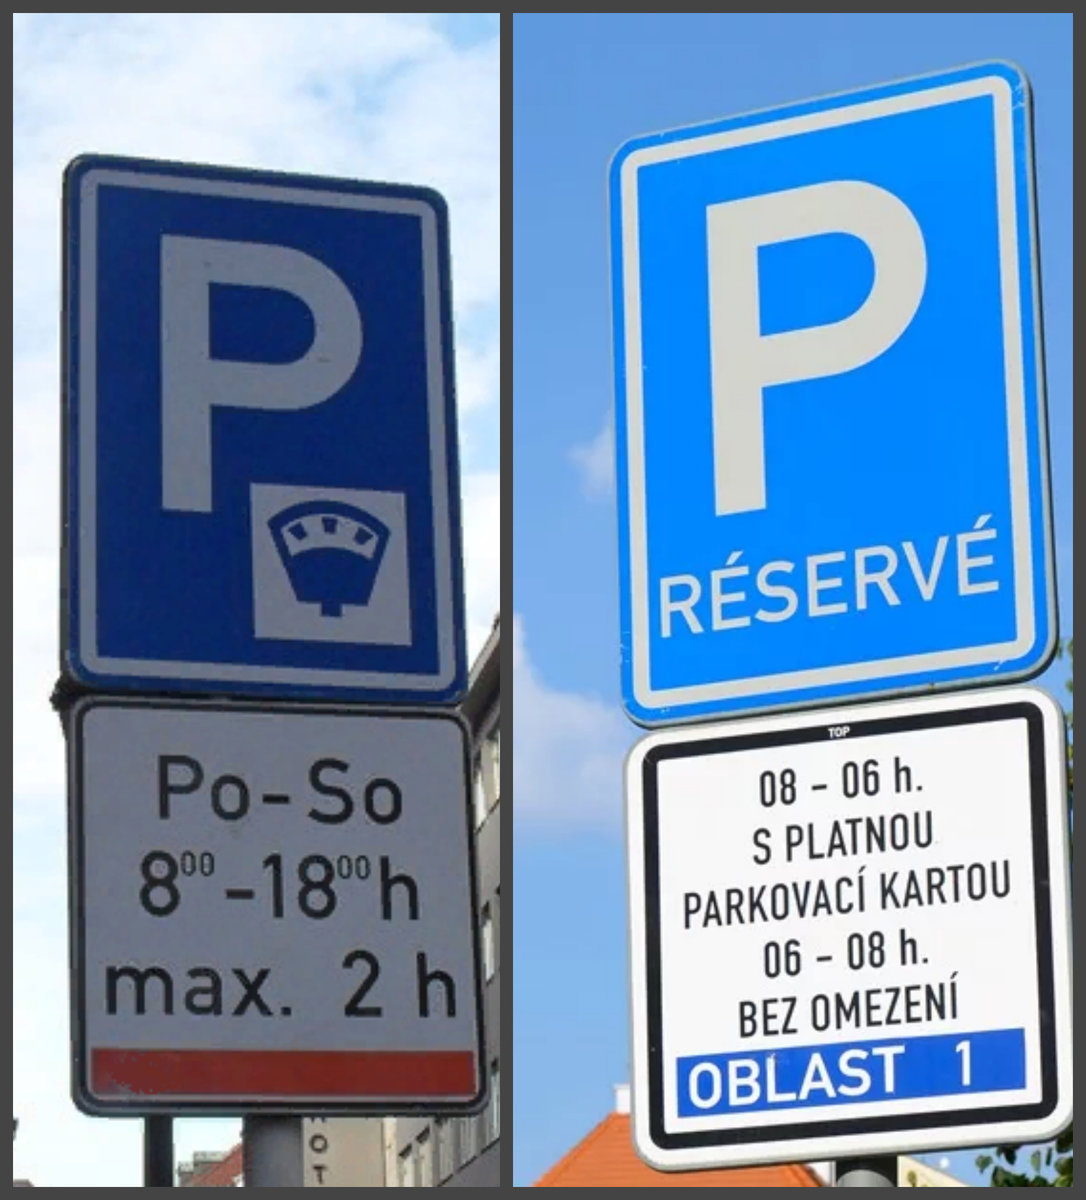 Бесплатные парковки в хельсинки